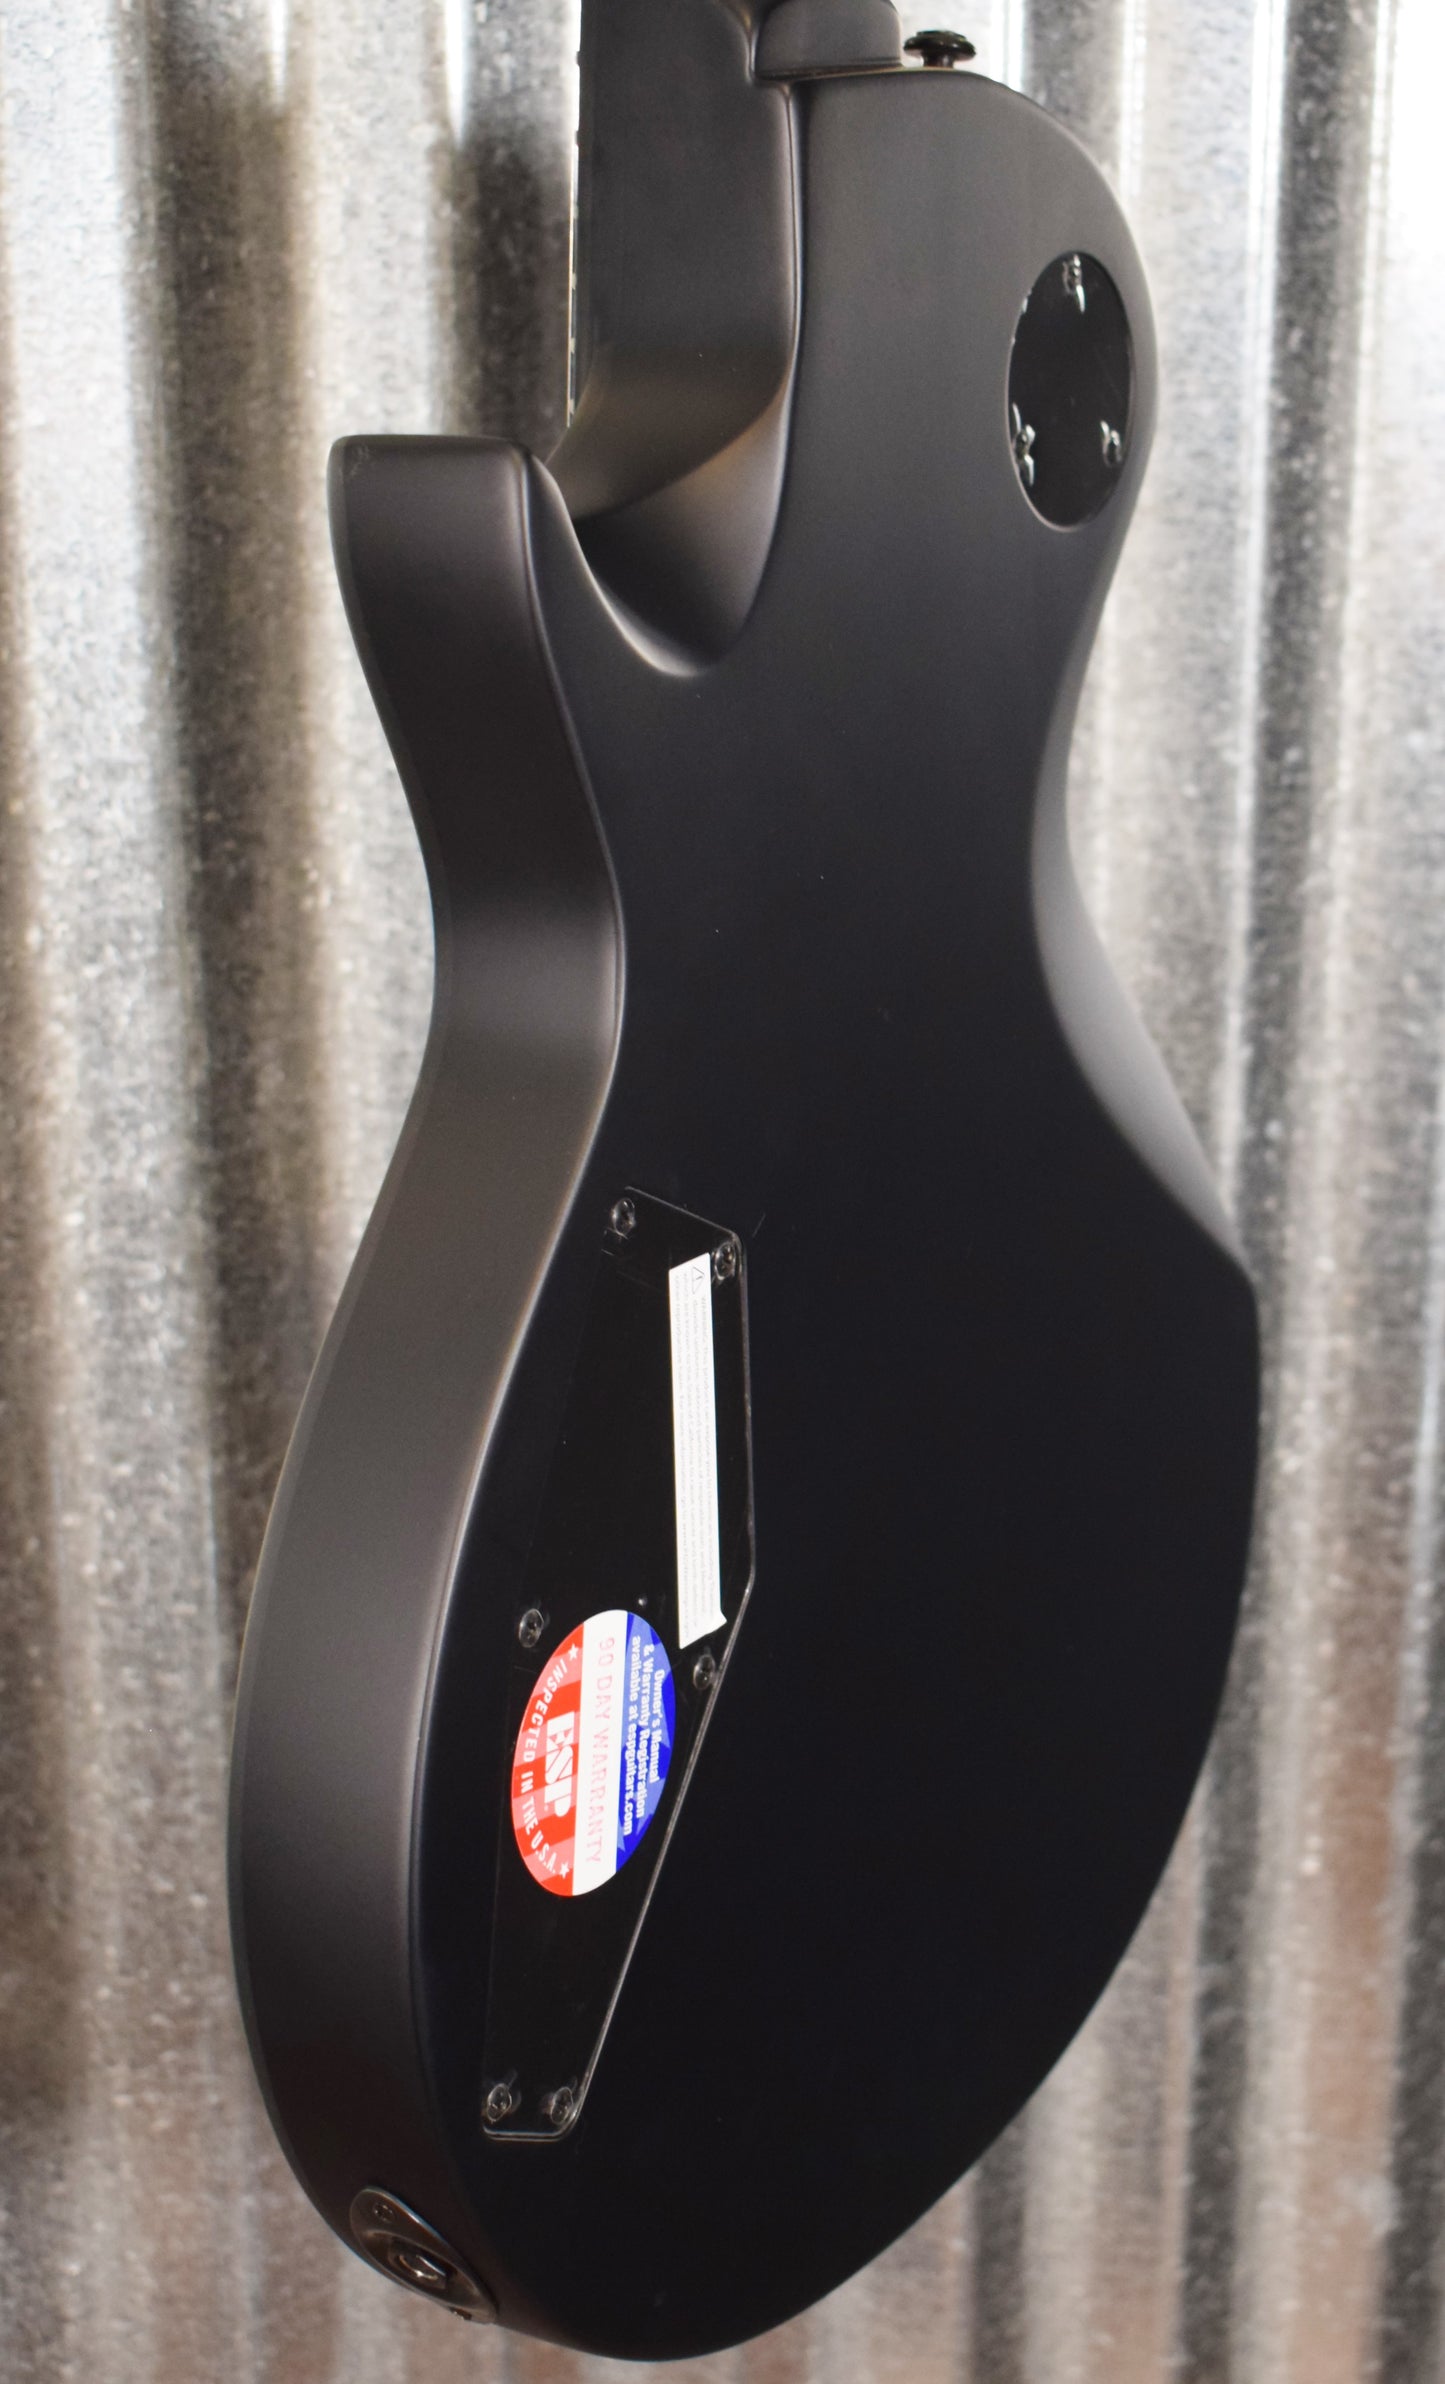 ESP LTD EC-256 EC Series Black Satin Guitar LEC256BLKS #1684